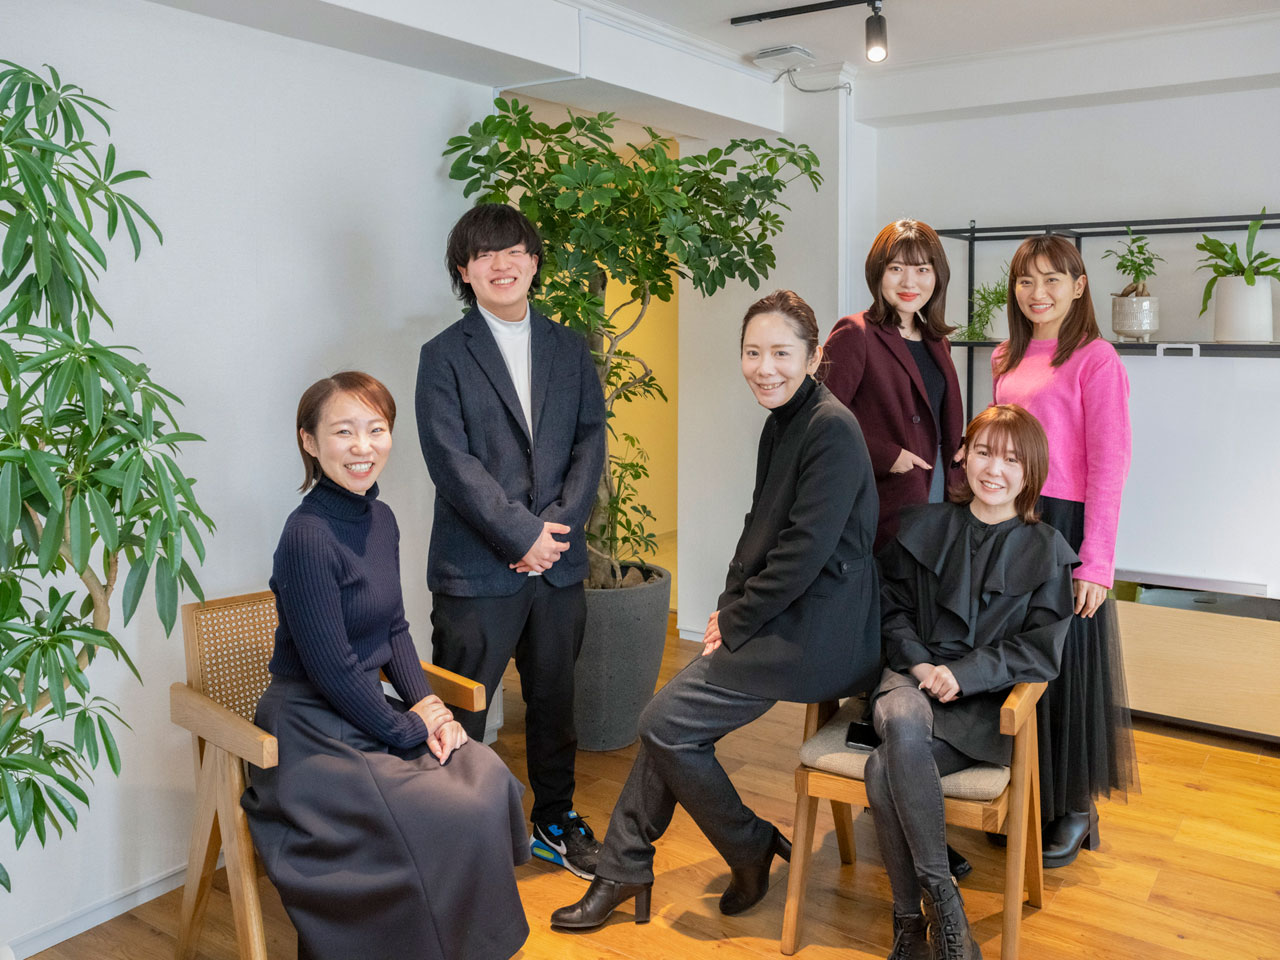 同社は、美容クリニックを運営する事業会社でマーケティング業務をマネジメントしてきた経験を有する代表取締役・西木昌江氏、取締役・橋本唯氏が共同創業者となり、2020年3月に設立された企業だ。